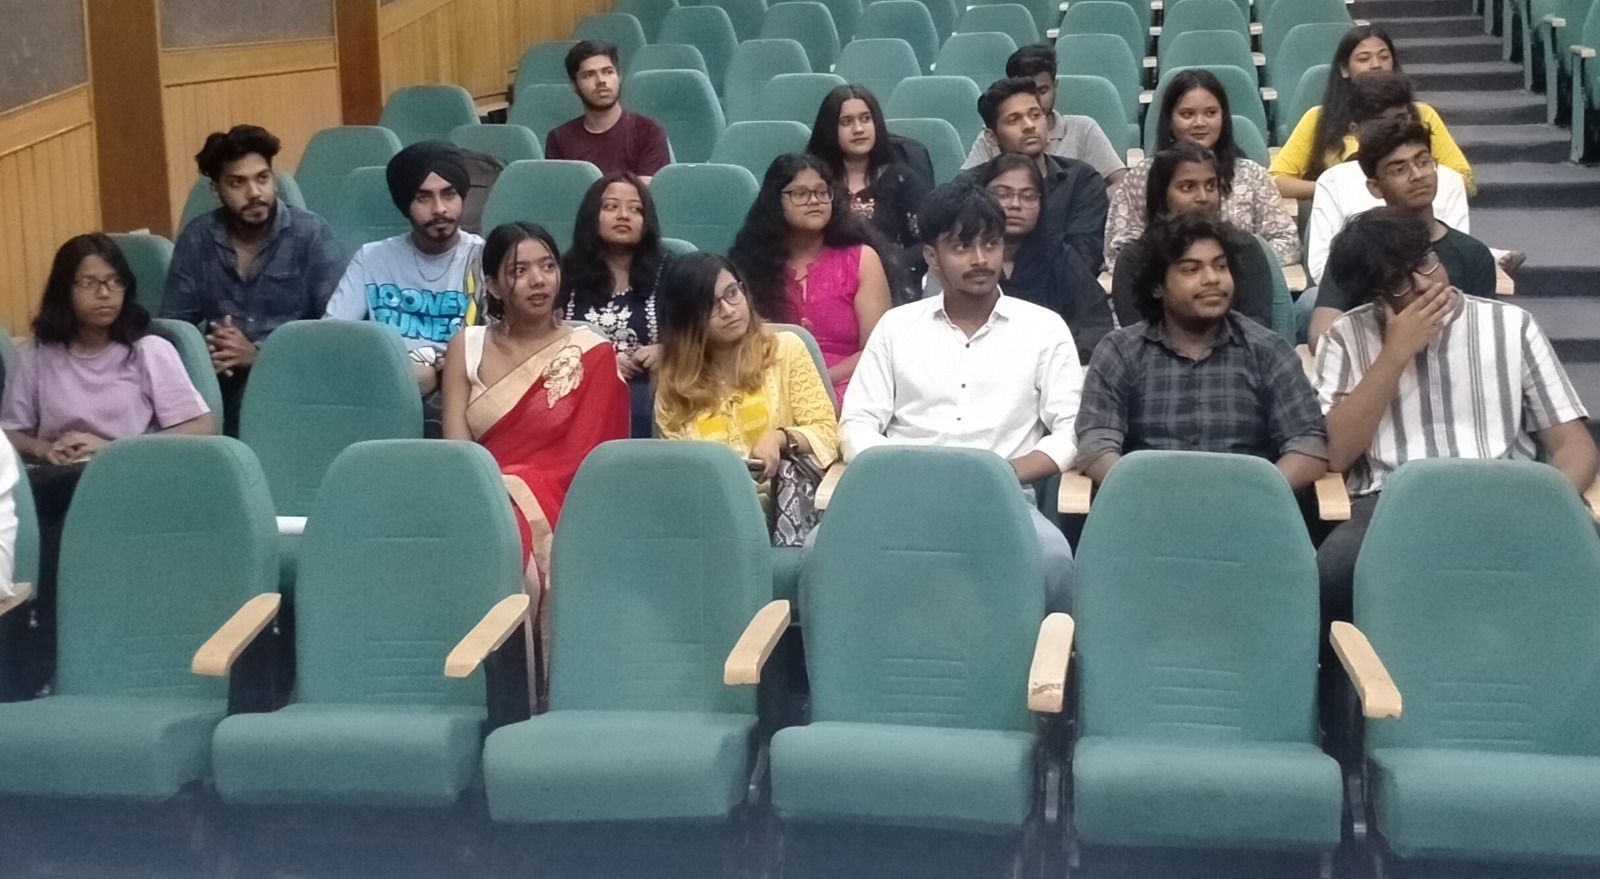 Embajada de Venezuela en India participa en charla sobre Rómulo Gallegos en Universidad Amity